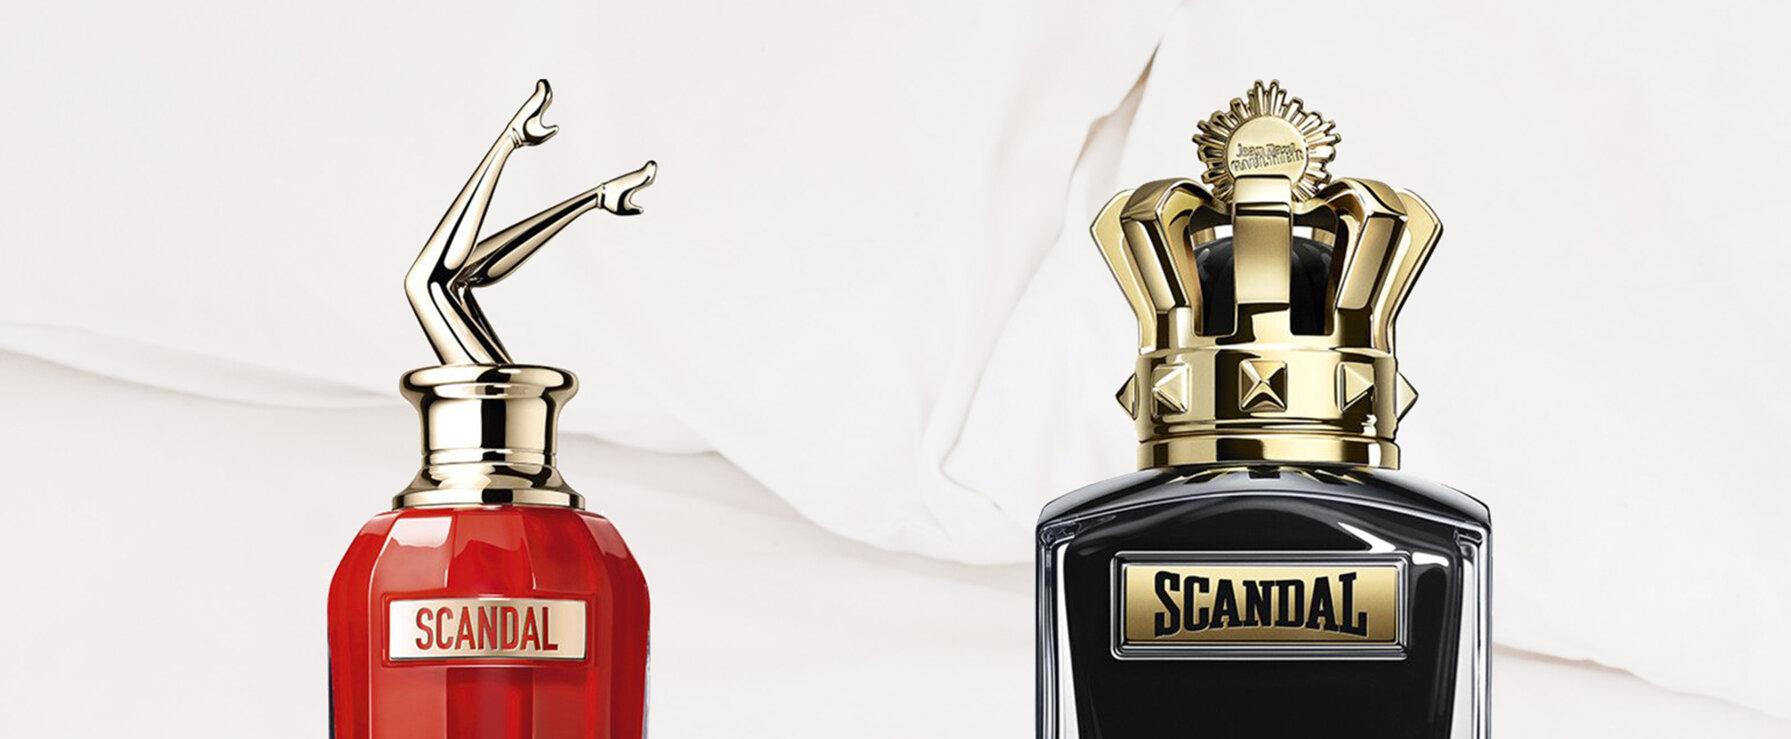 Jean Paul Gaultier expands fragrance portfolio with "Scandal Le Parfum" and "Scandal pour Homme Le Parfum"